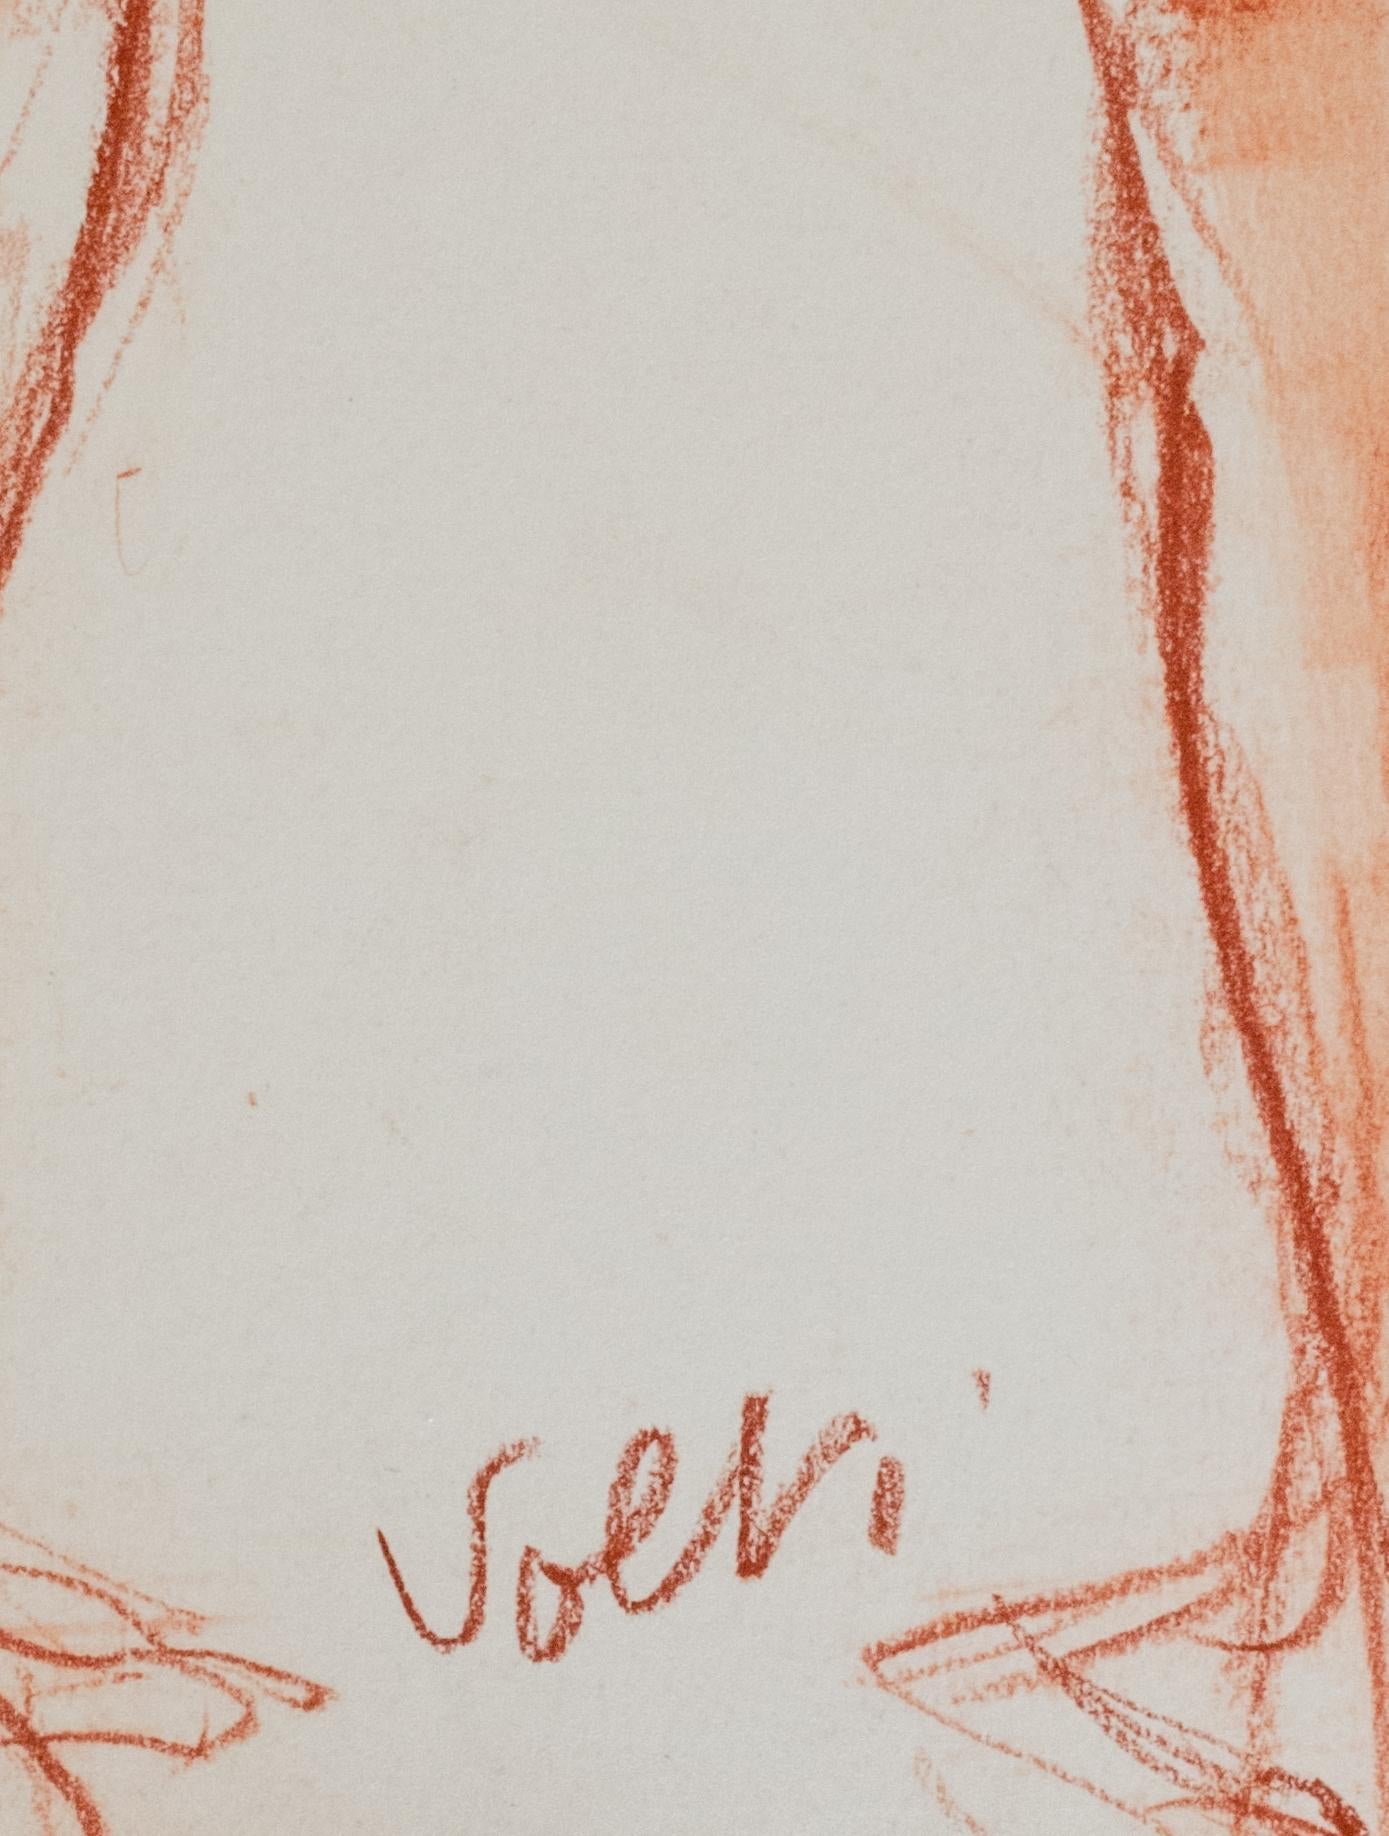 Étude - Figure en craie rouge d'Antonio Volti - Art de Antoniucci Volti